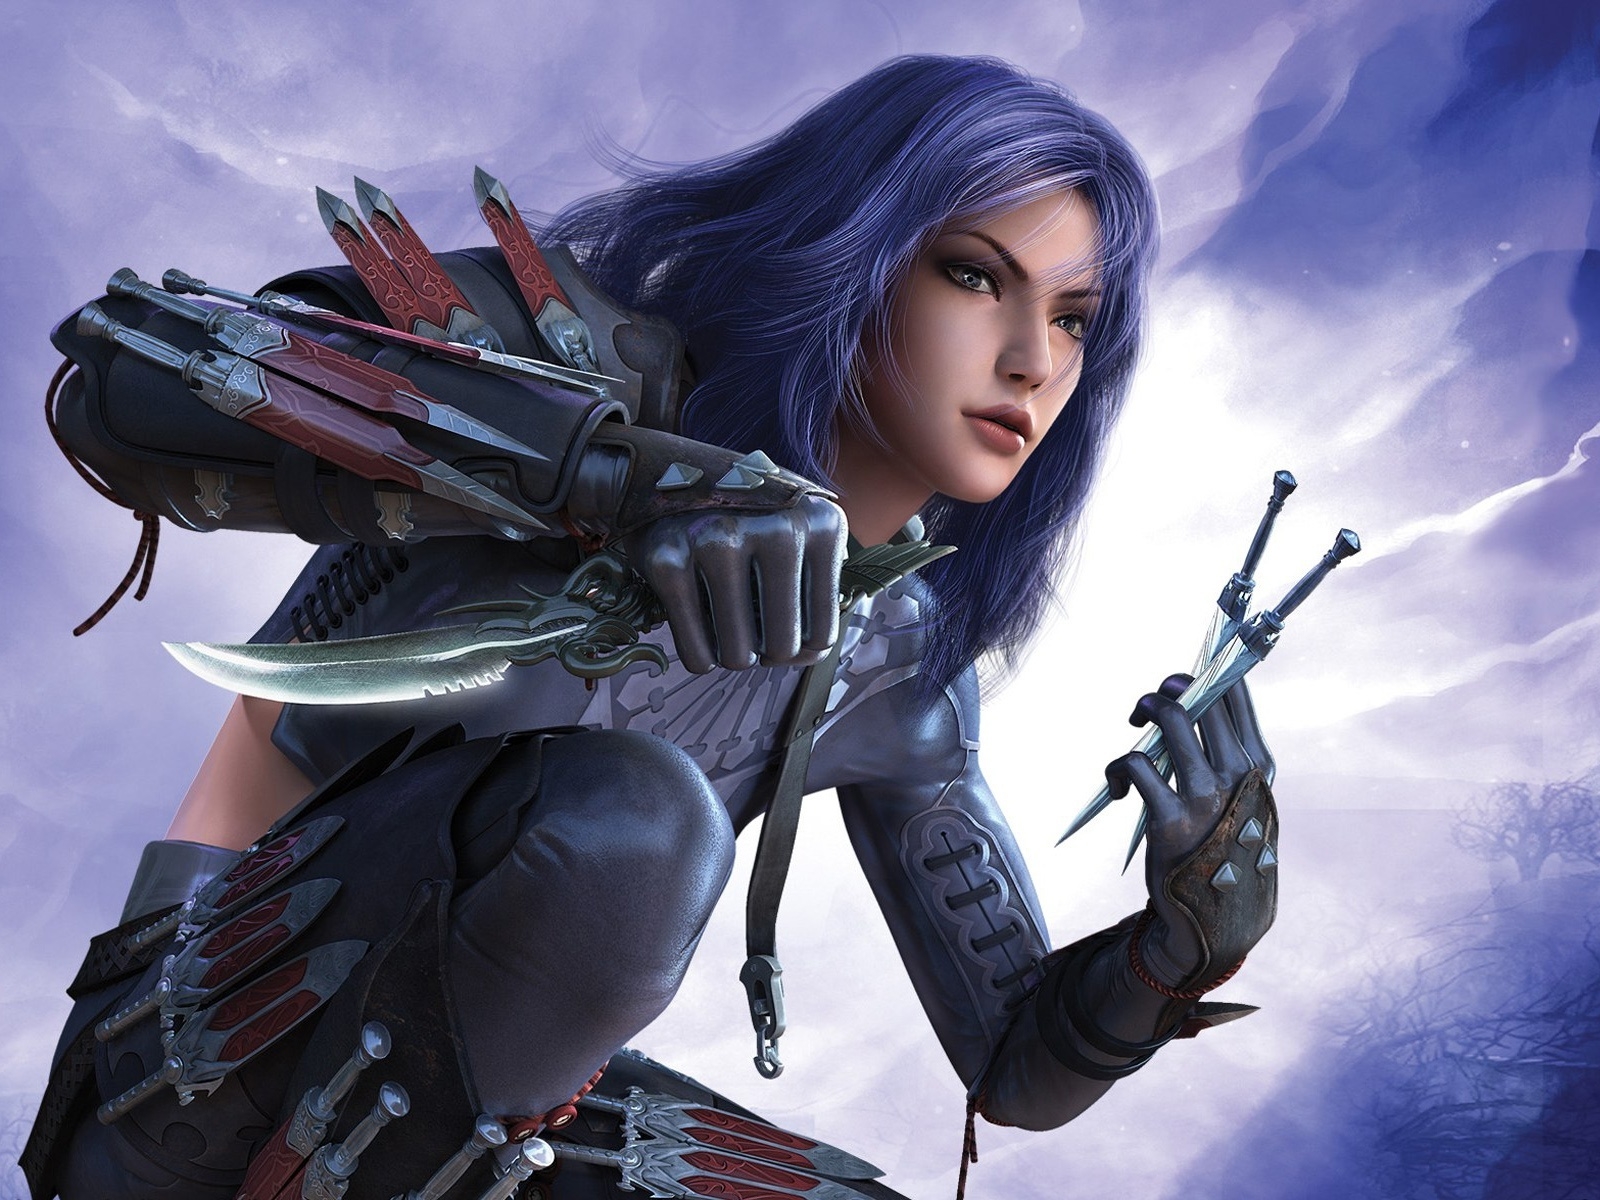 Fantasy Girl Assassin for 1600 x 1200 resolution